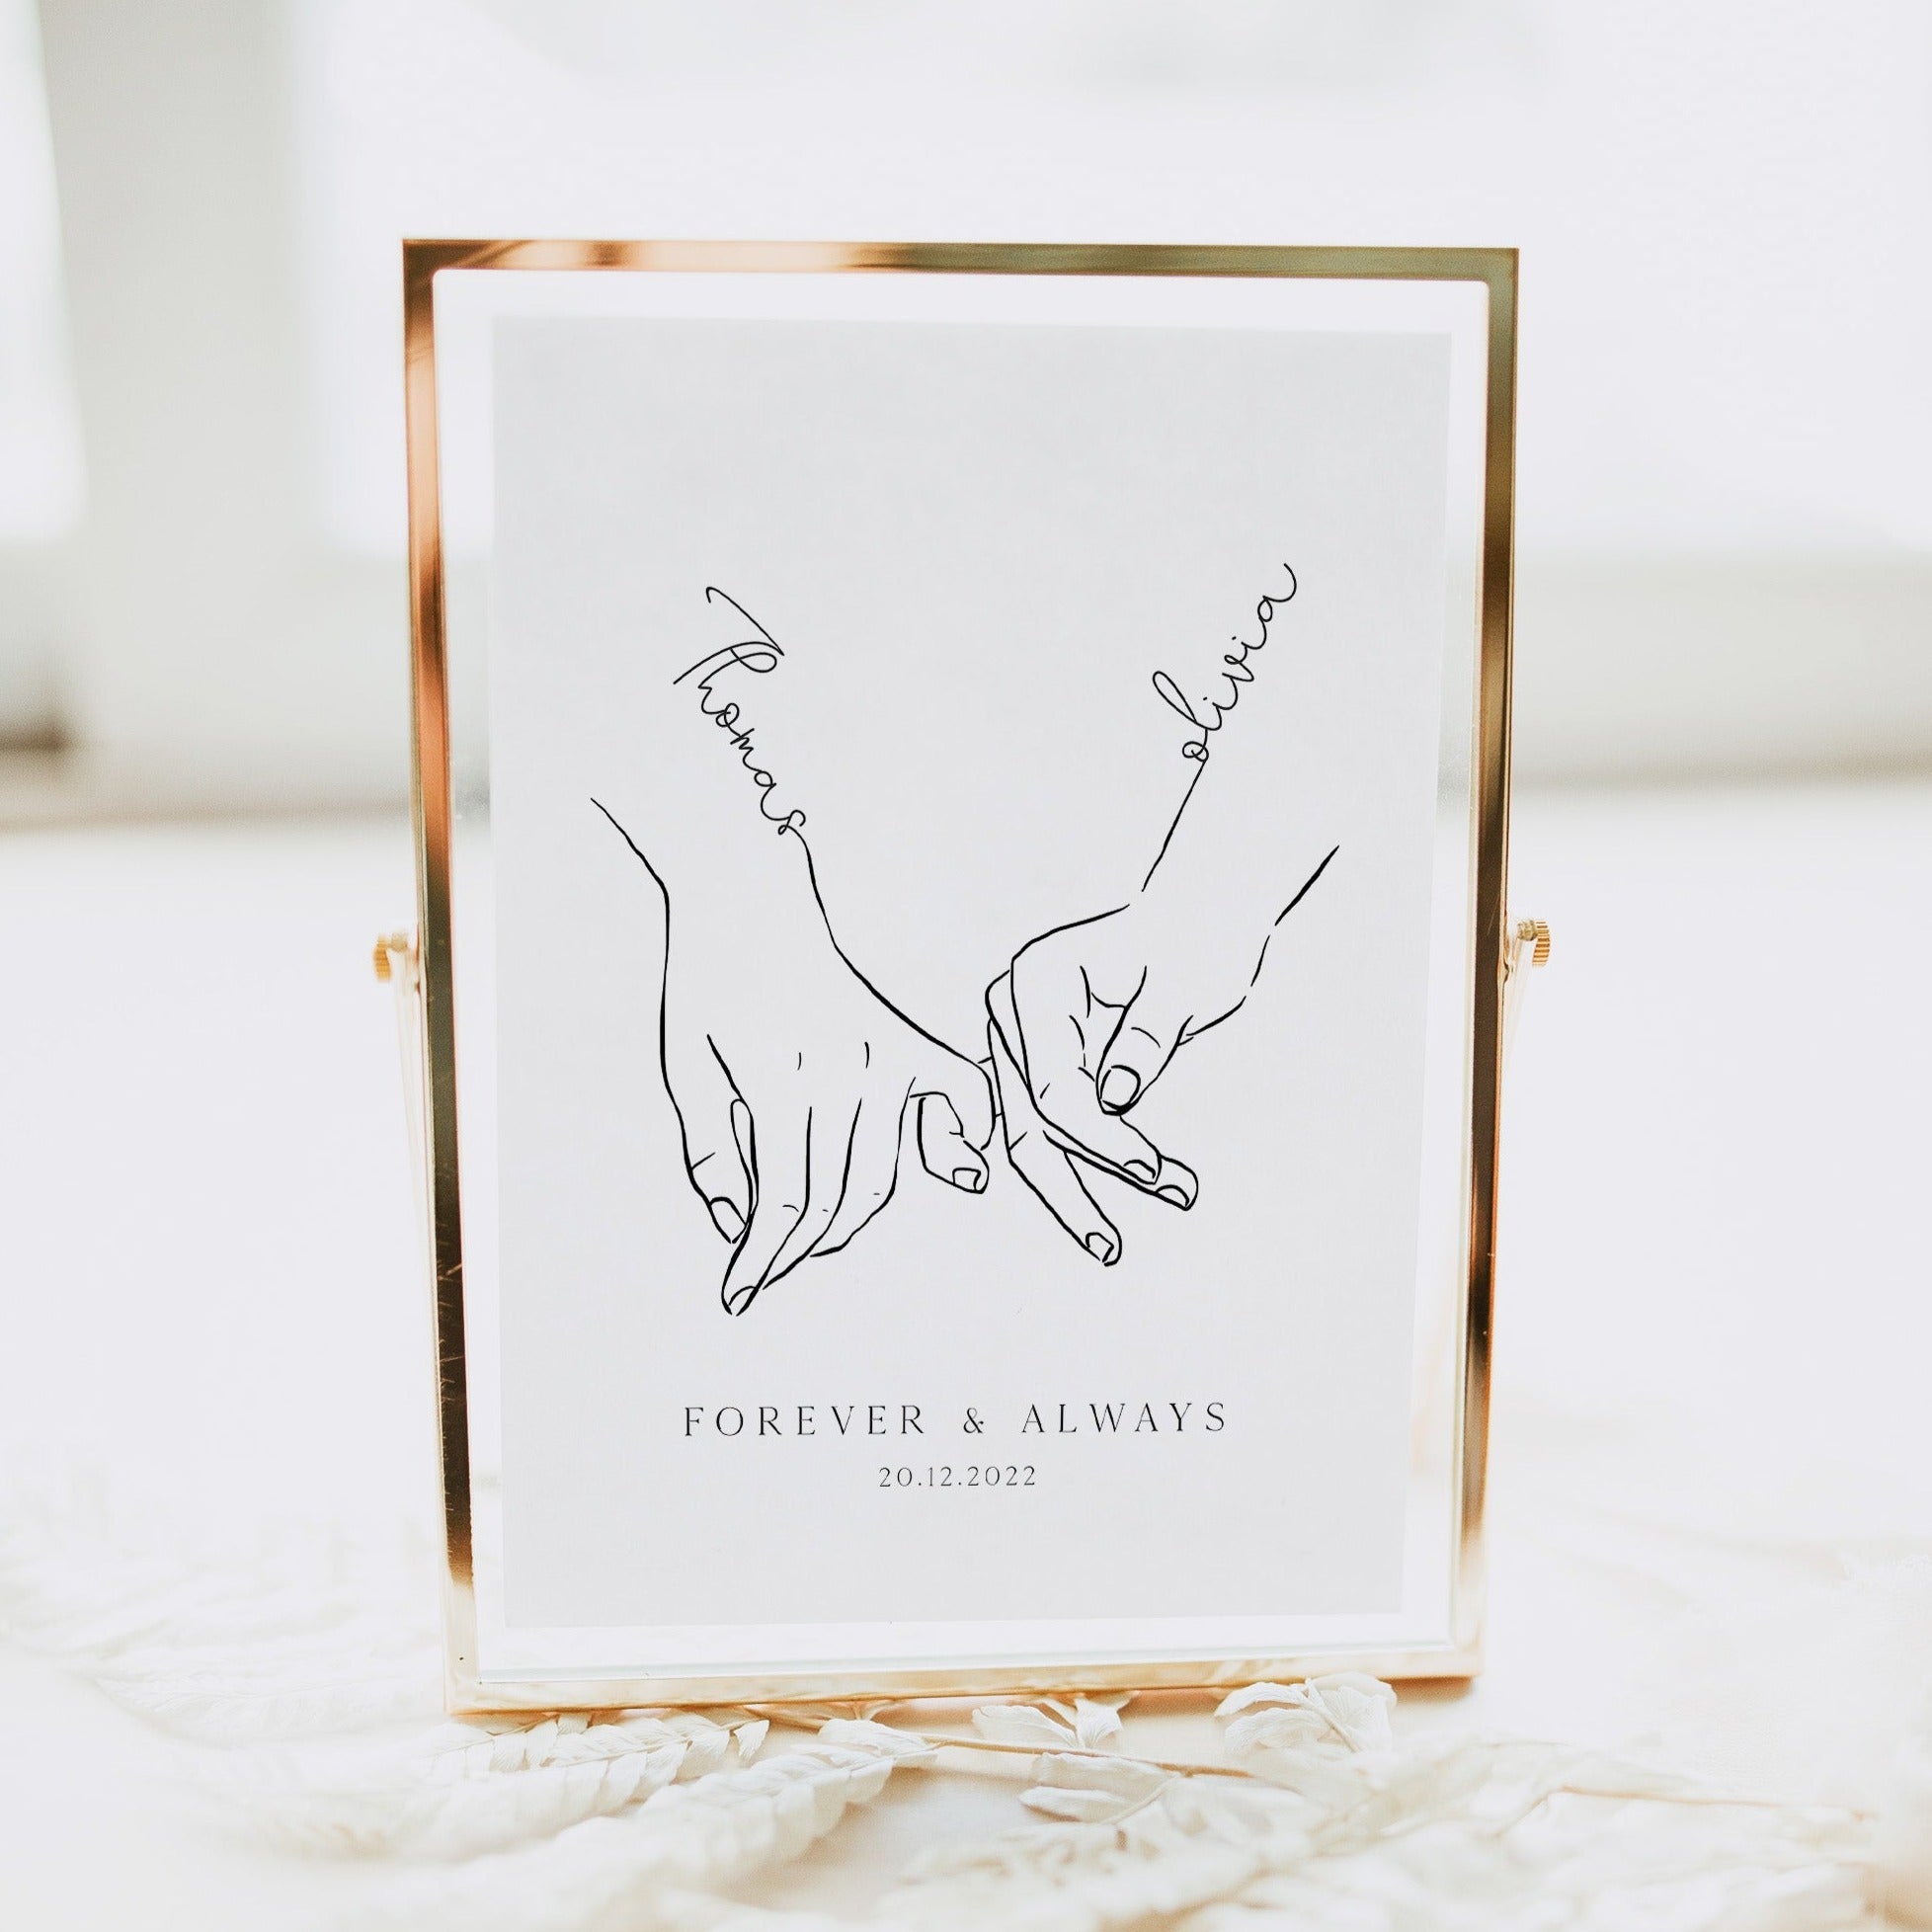 Top 10 wedding anniversary gifts for couples | Design Dekko